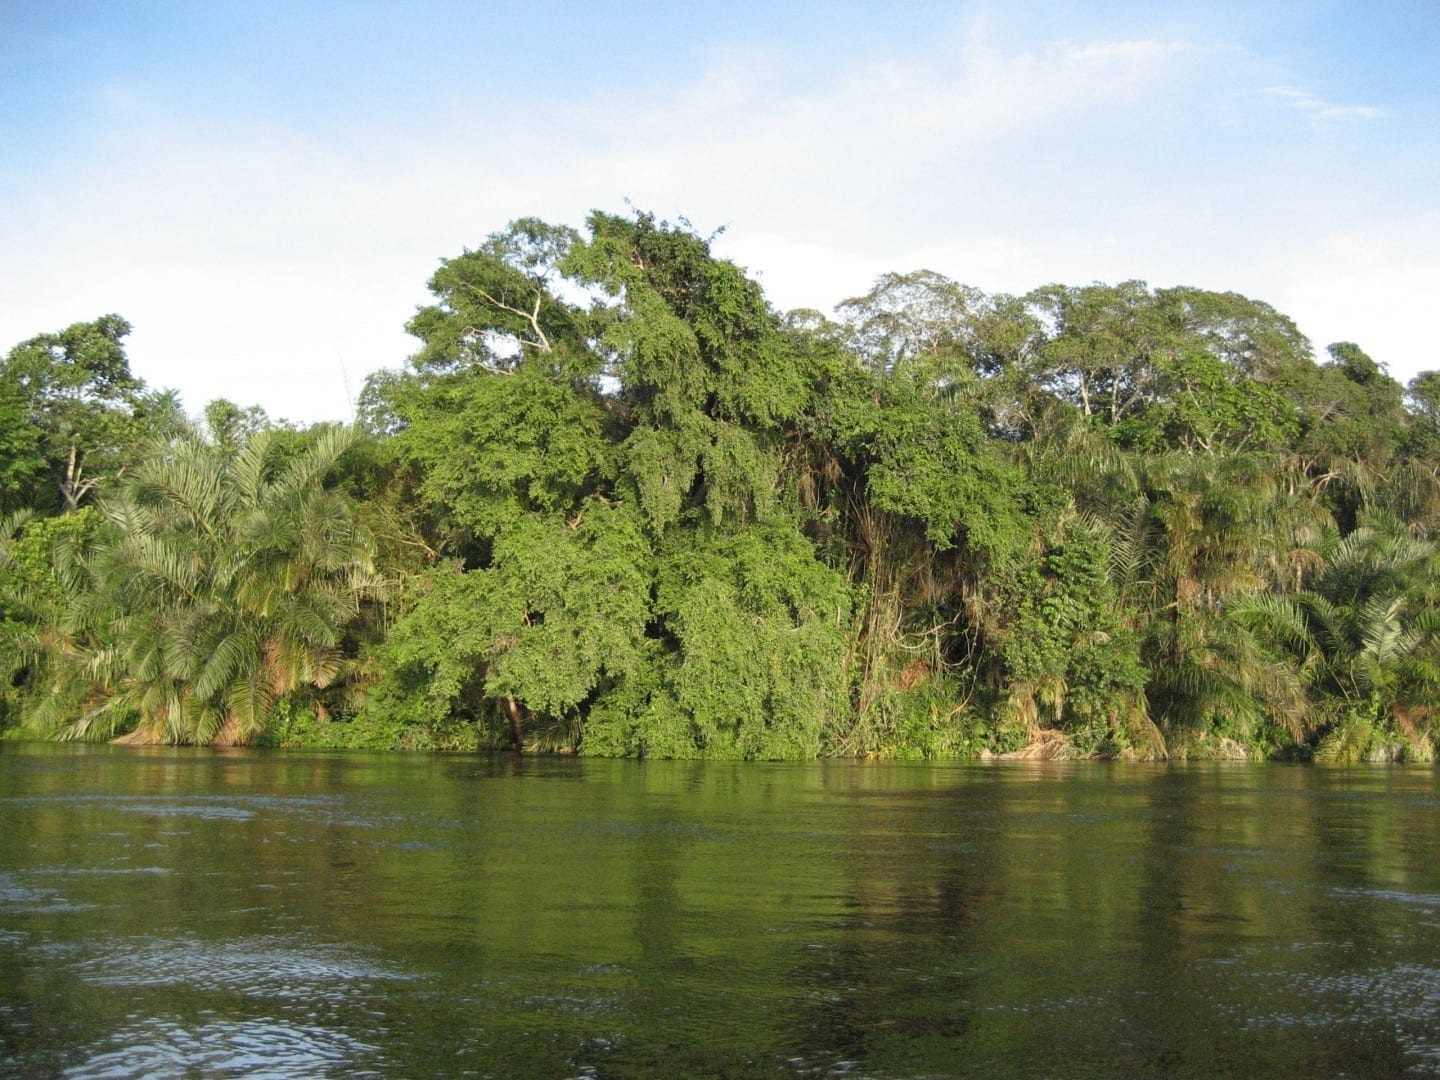 Paisaje en el río Alima, un afluente del río Congo Congo